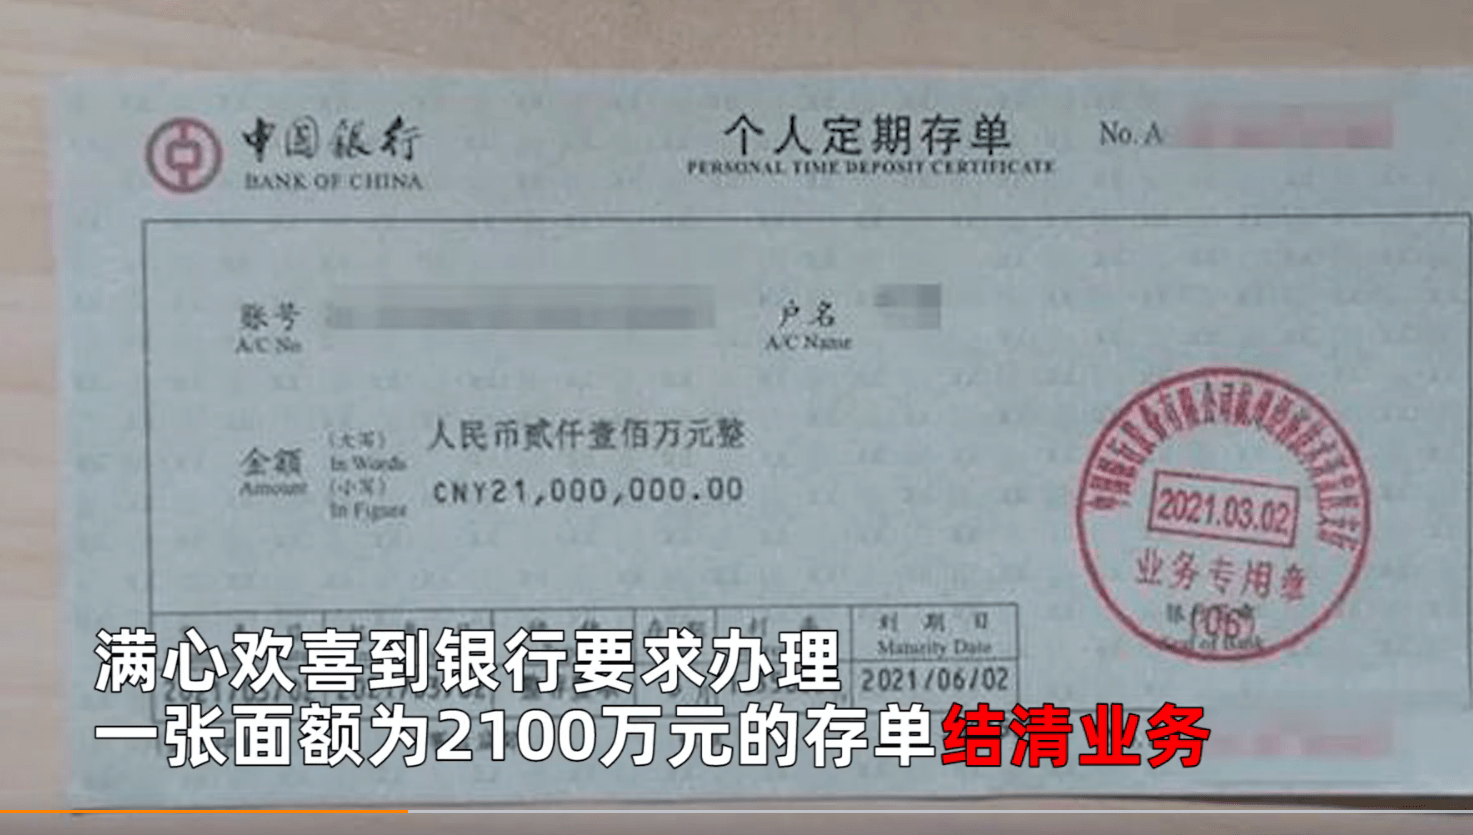 浙江杭州 姑娘收到男友2100万彩礼,到银行发现钱和男友都是假的